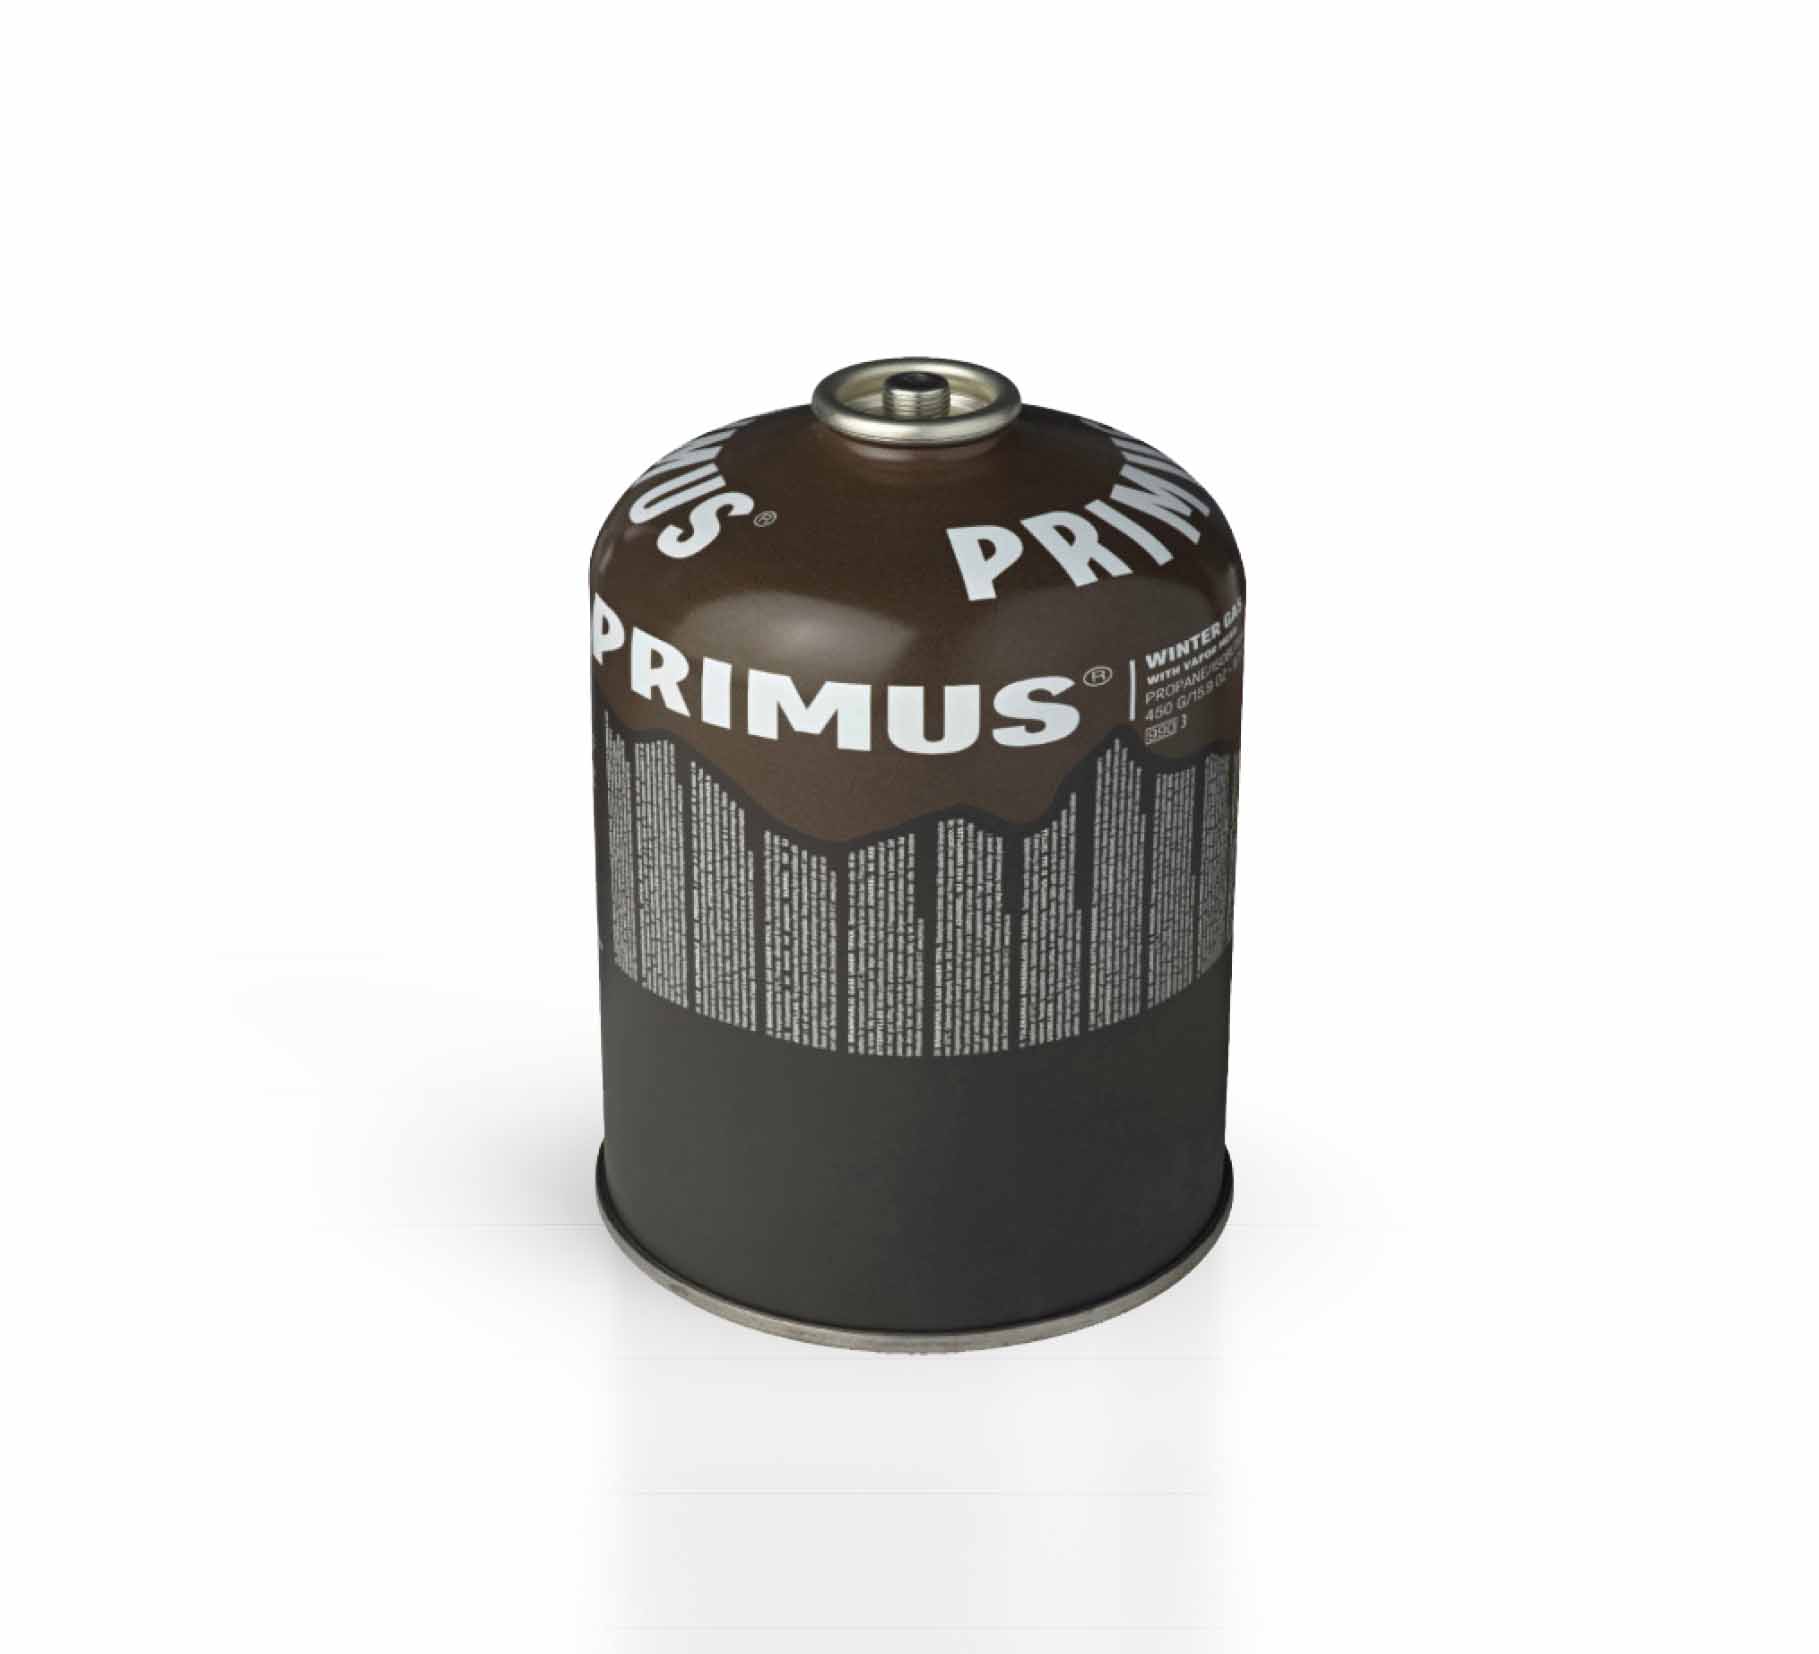 PRIMUS WINTER GAS 450 g/UN2037